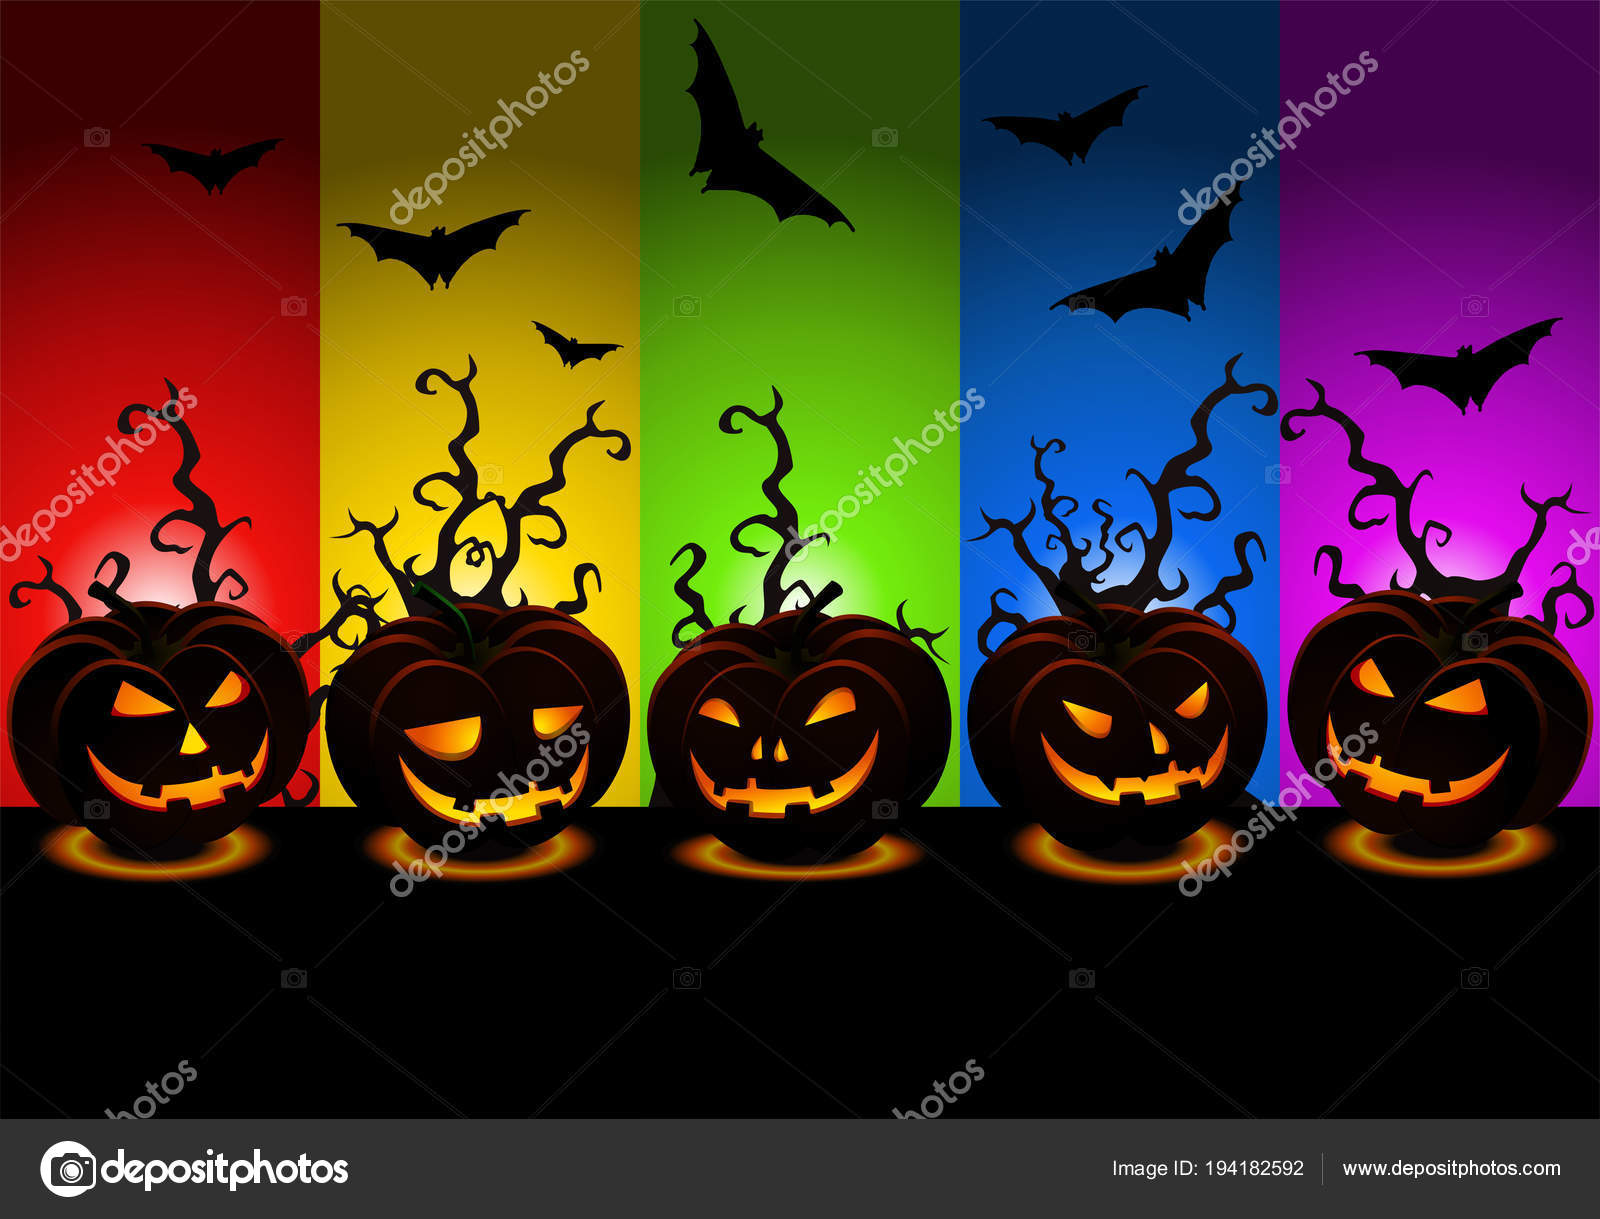 Happy Halloween Wallpaper Gratis - HD Wallpaper 